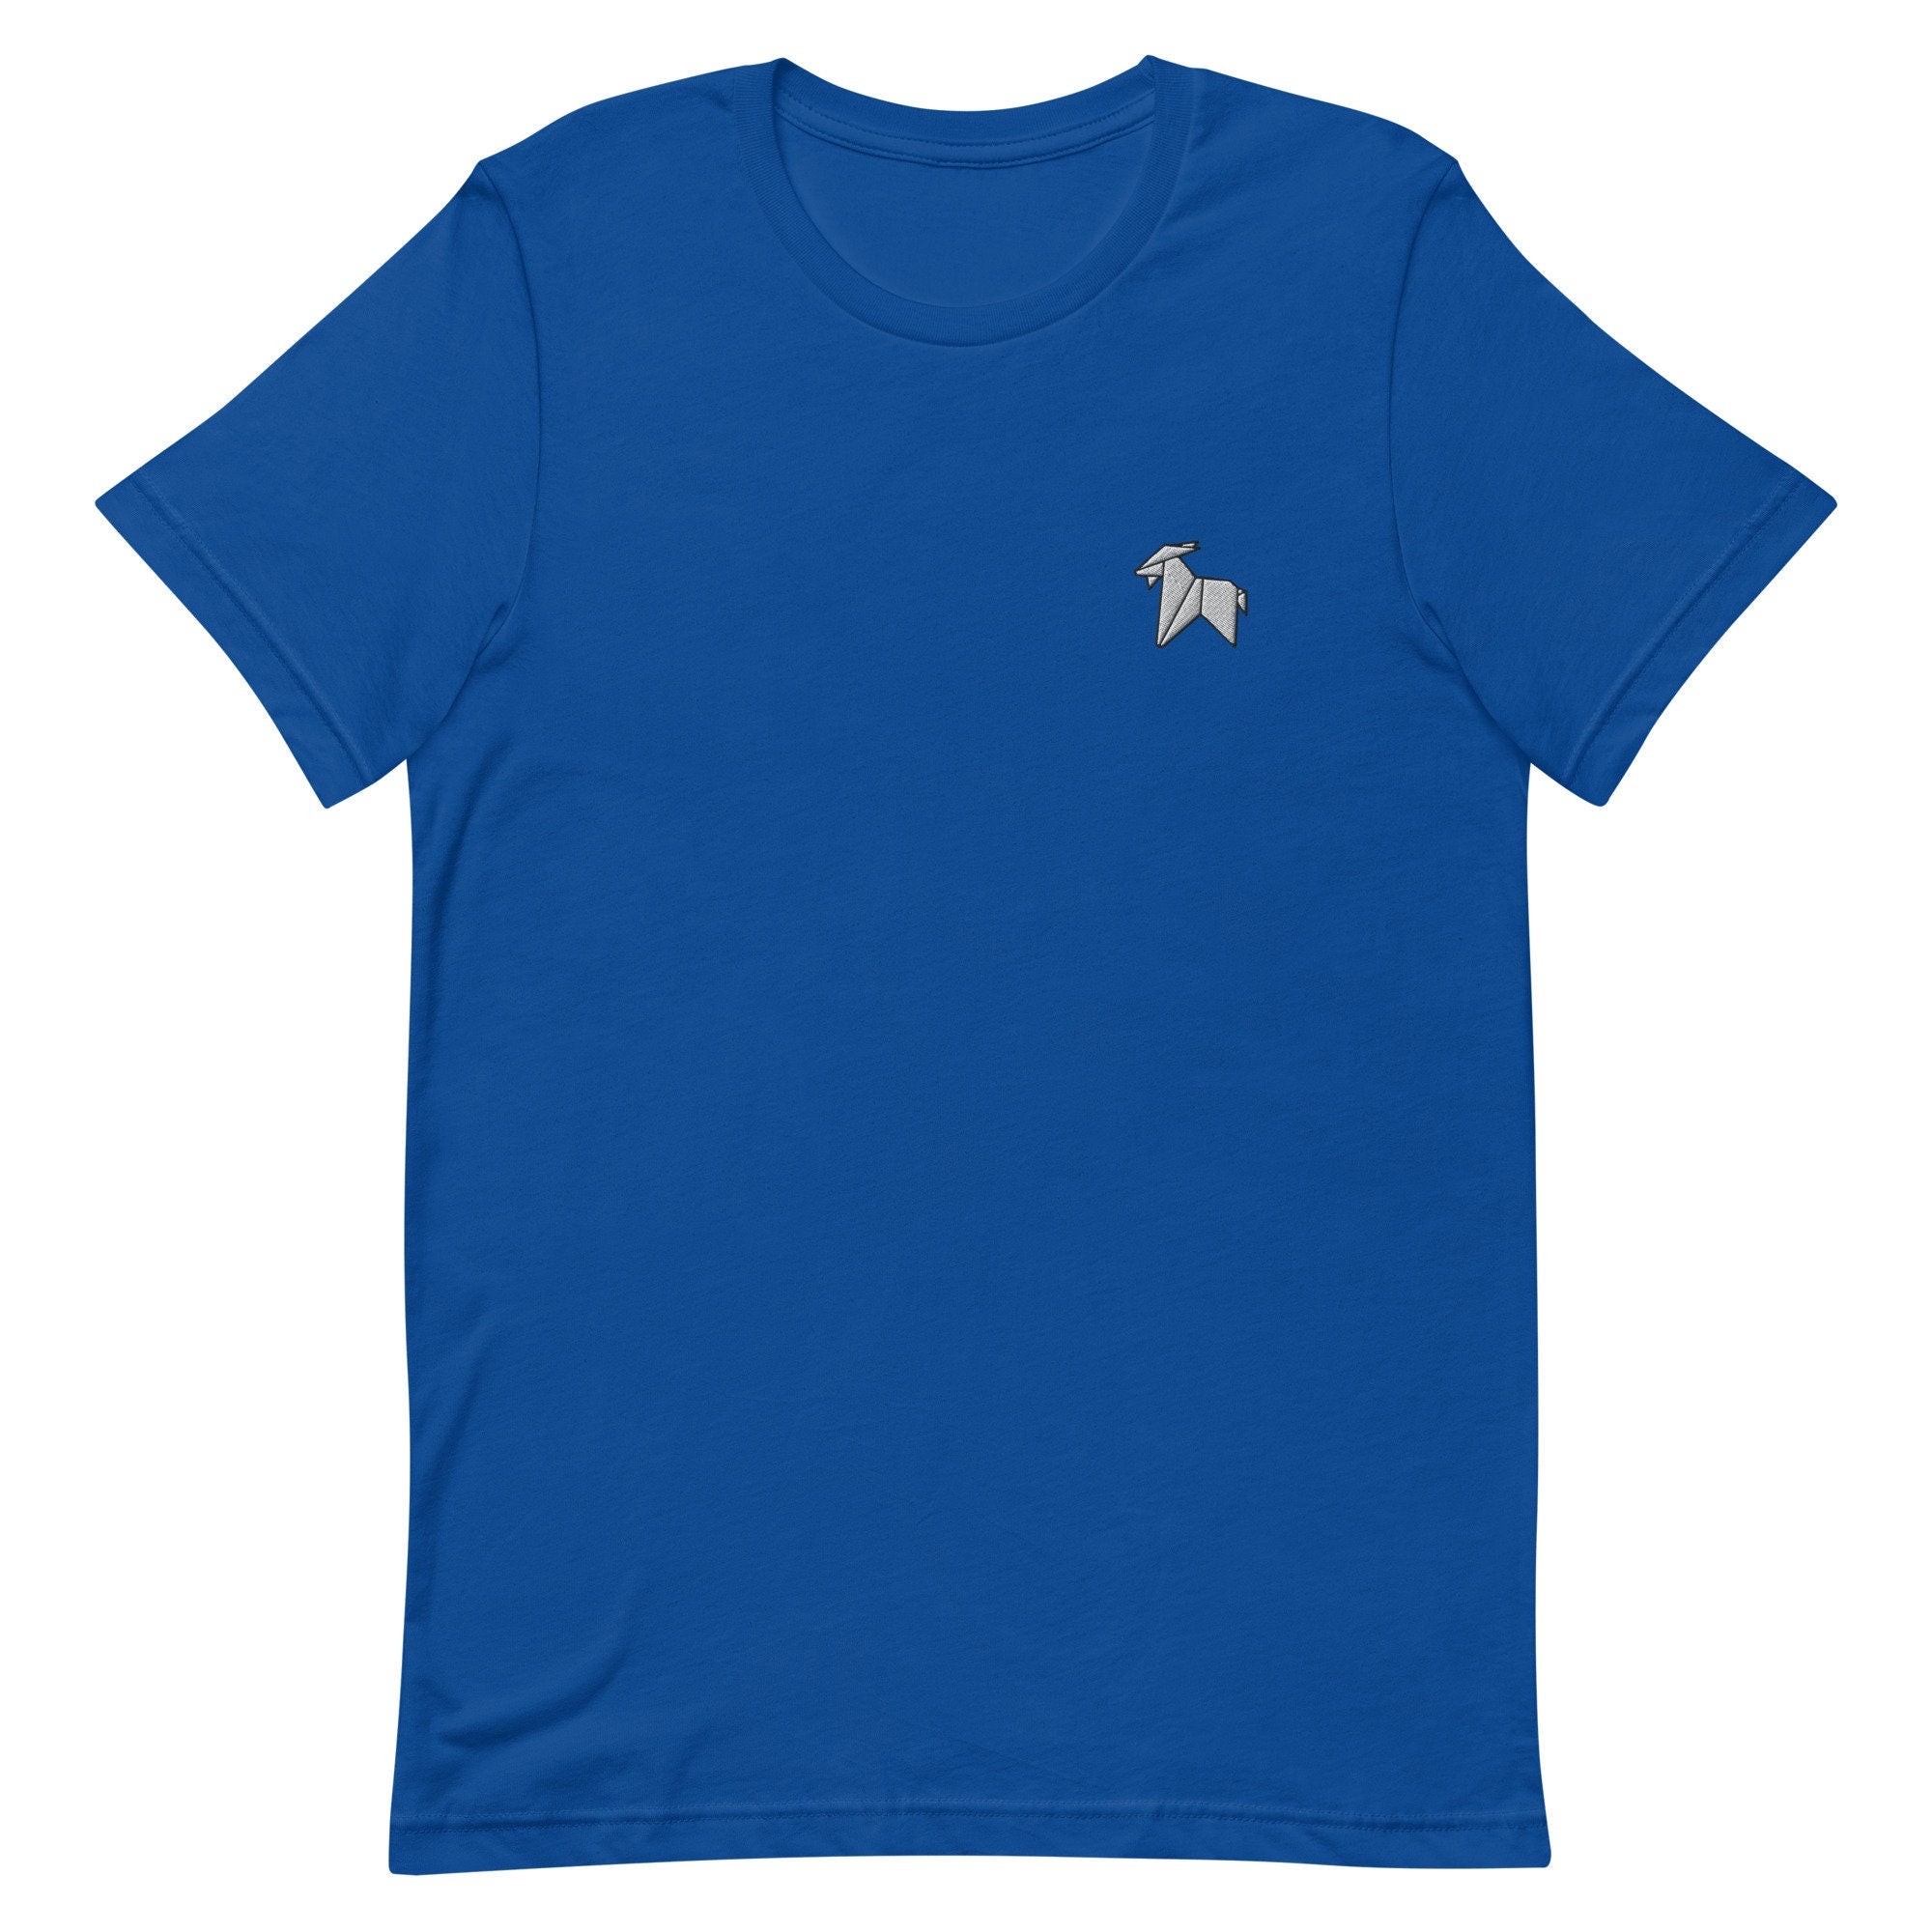 Origami Goat Premium Men's T-Shirt, Embroidered Men's T-Shirt Gift for Boyfriend, Men's Short Sleeve Shirt - Multiple Colors